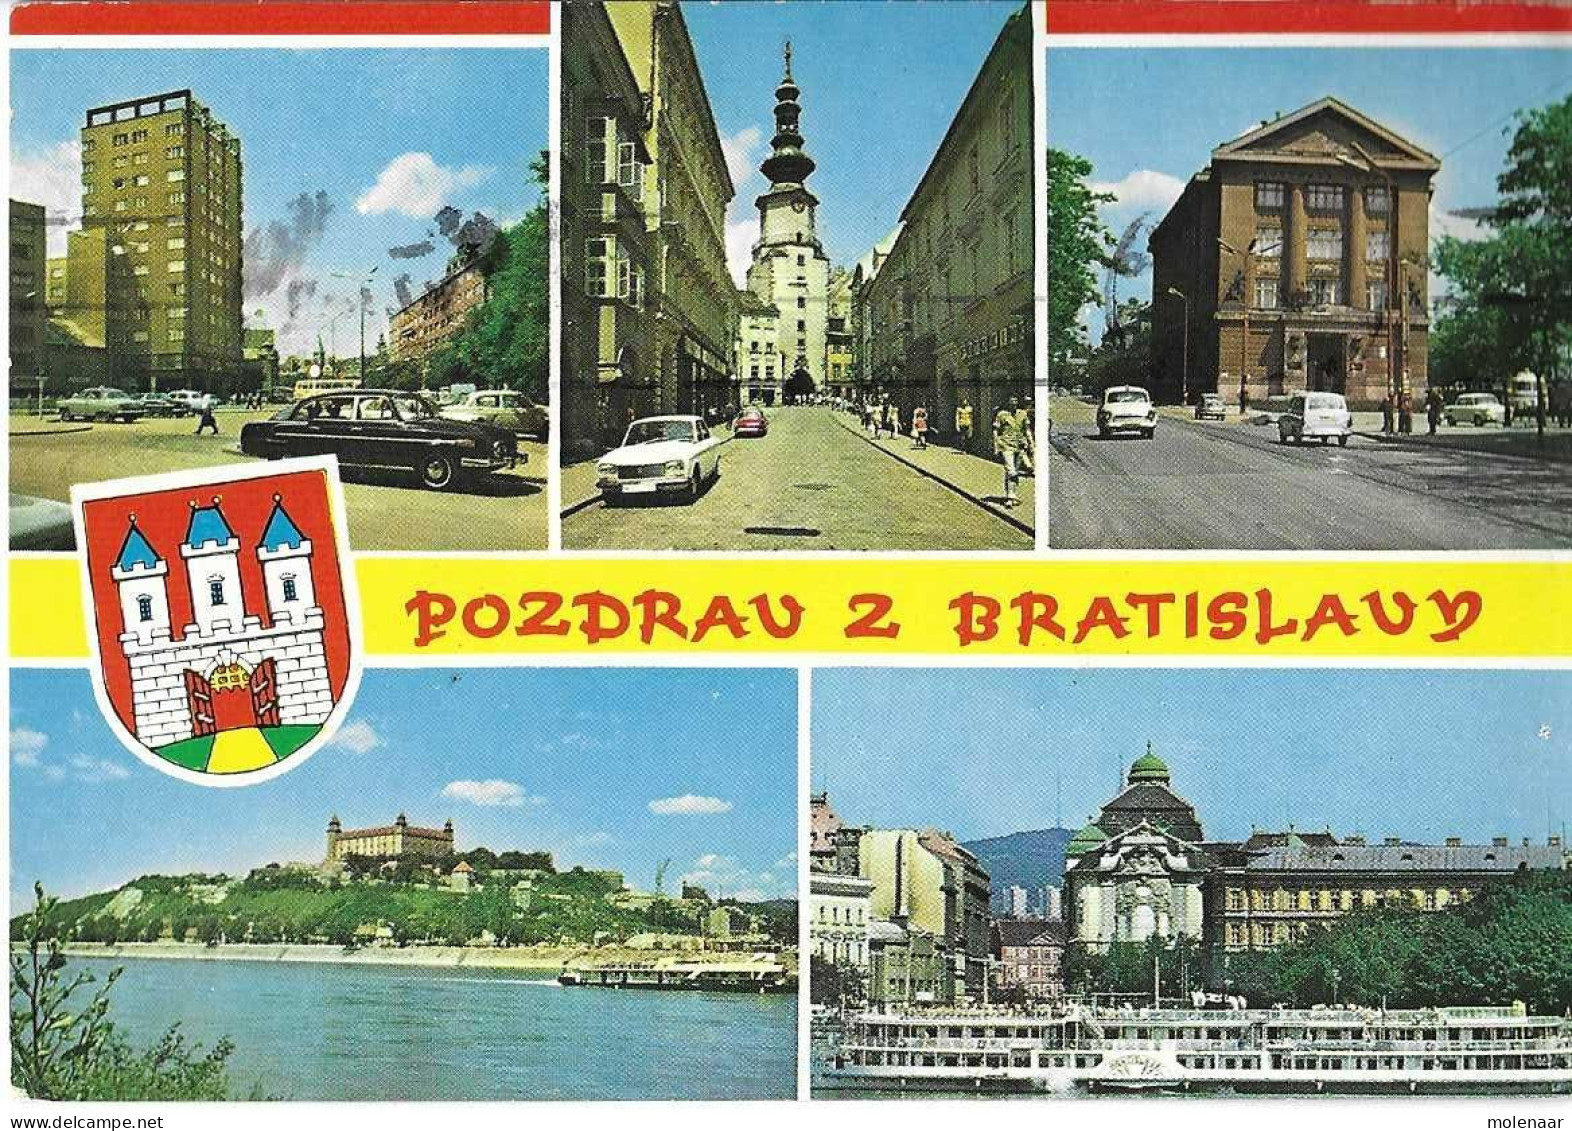 Postzegels > Europa > Tsjechoslowakije > 1960-69 > KAART MET 2 POSTZGELS (16930) - Covers & Documents